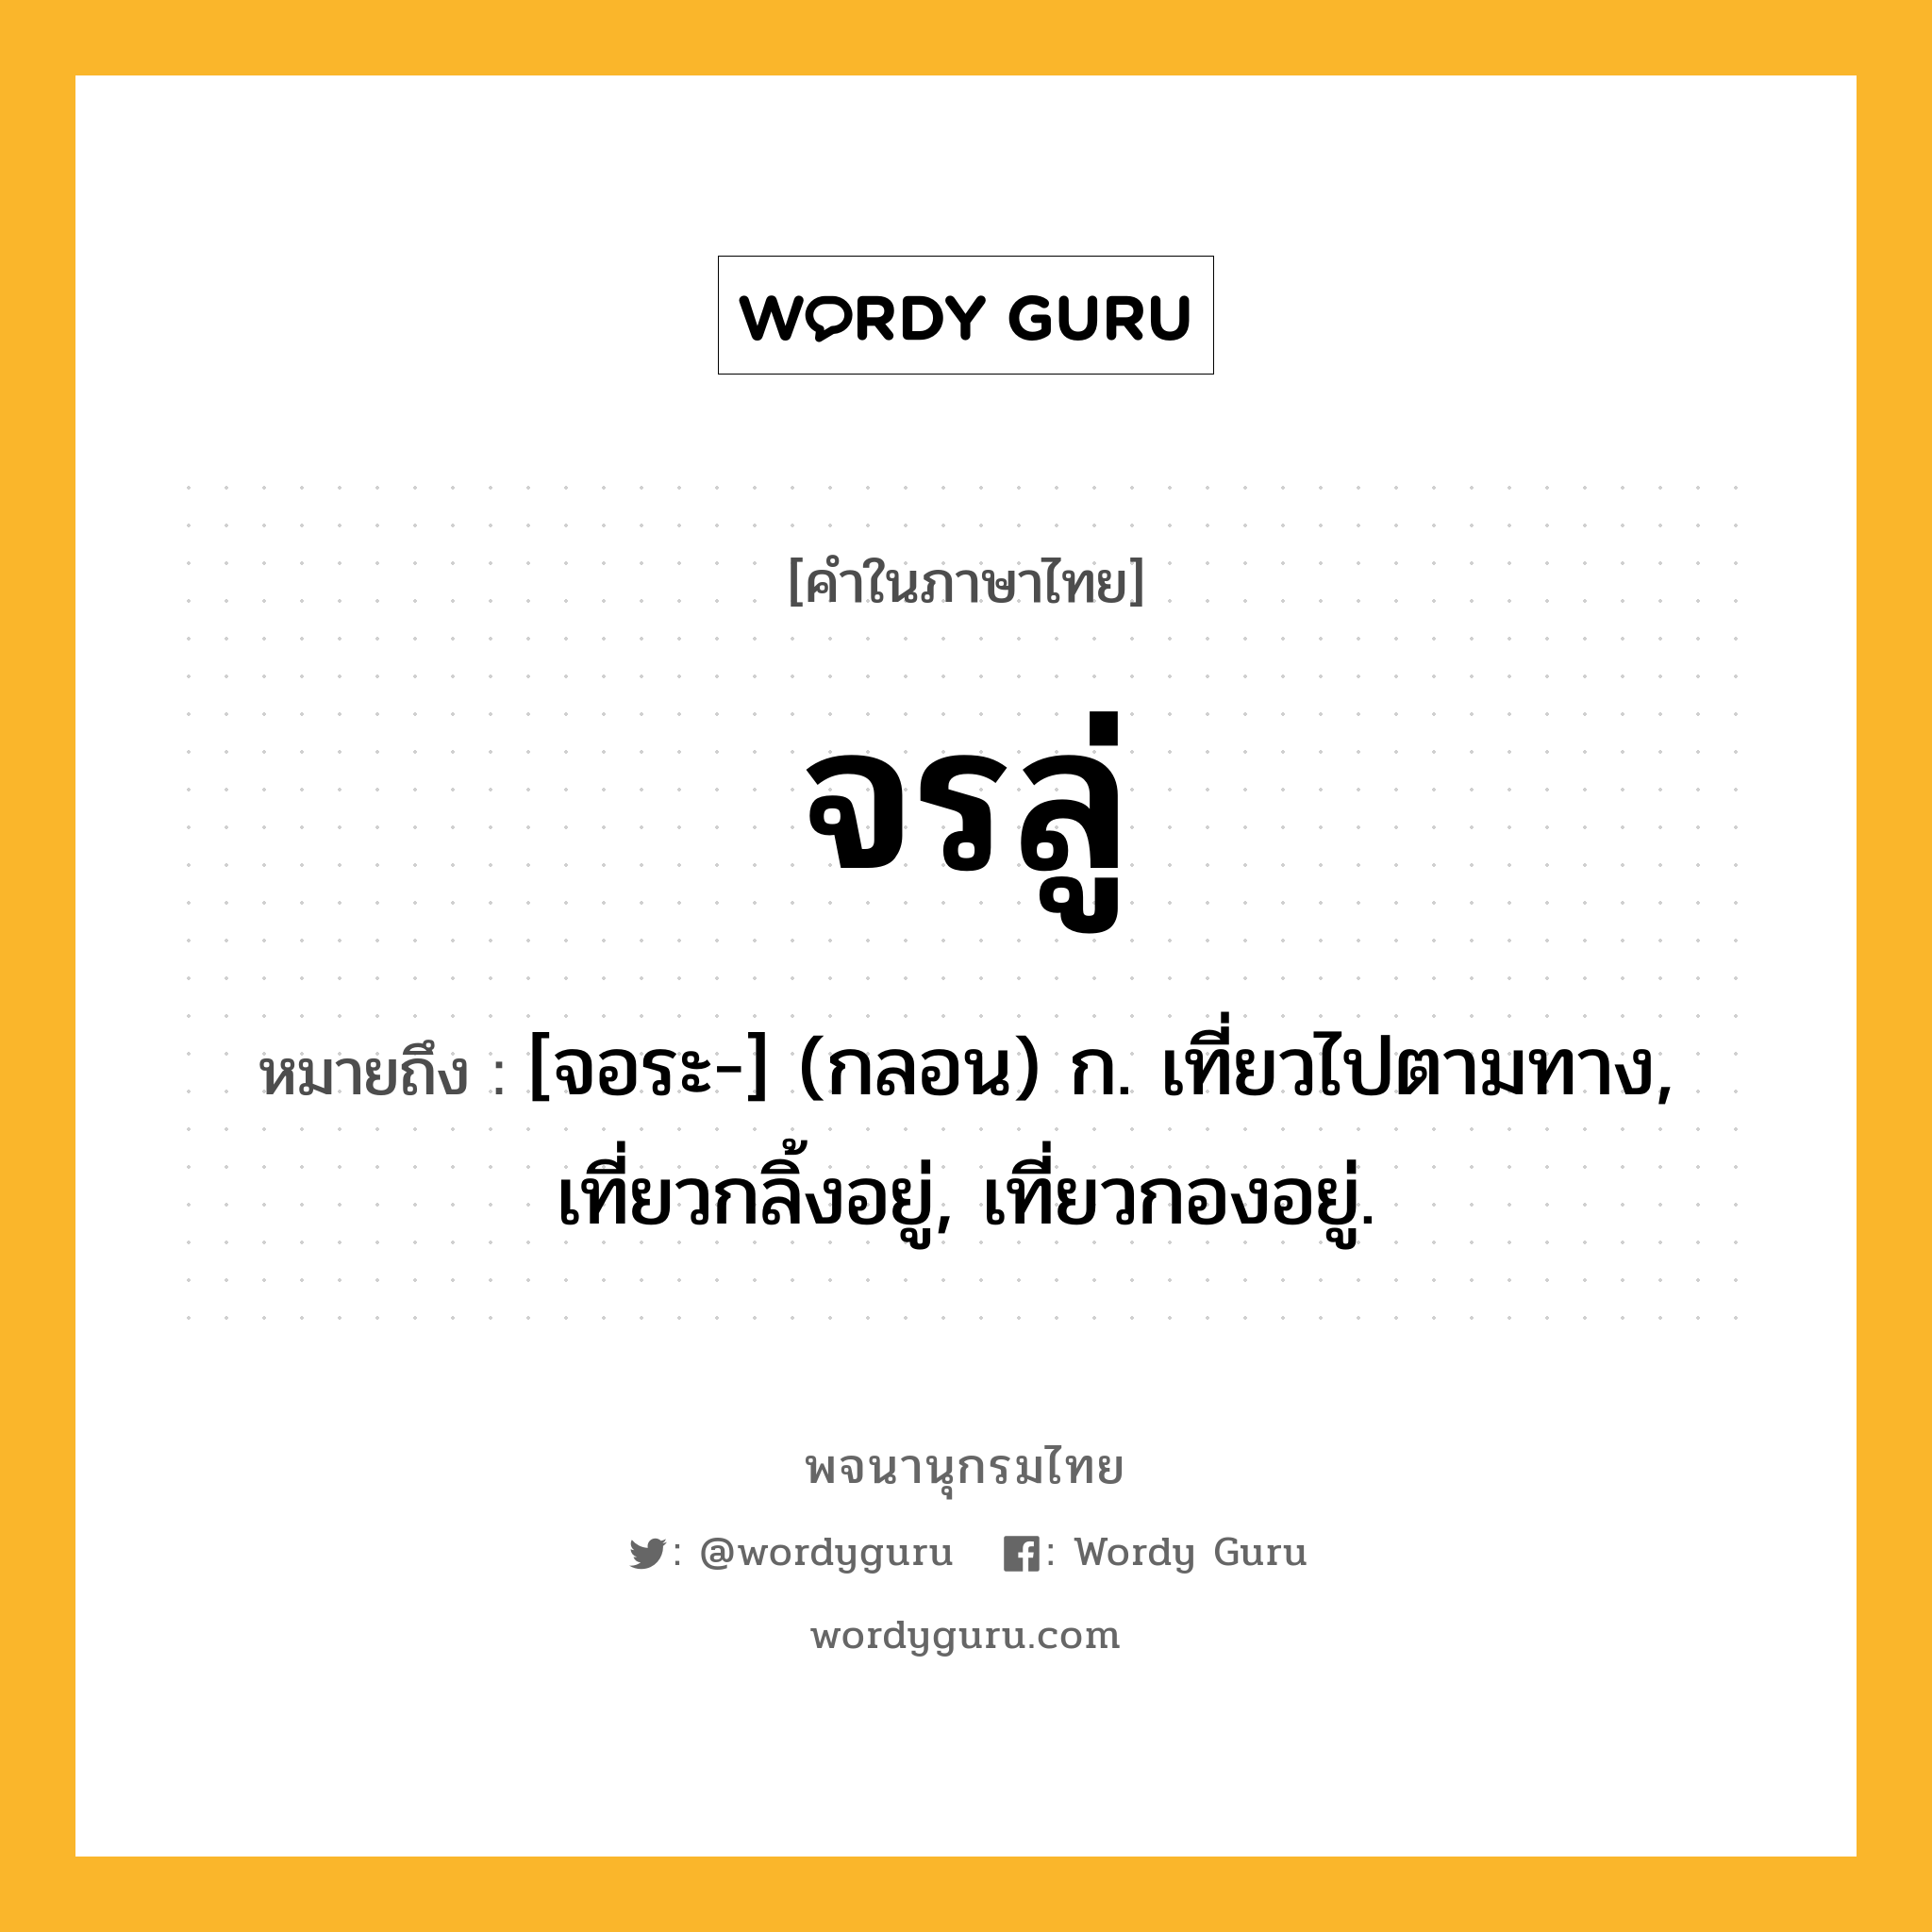 จรลู่ ความหมาย หมายถึงอะไร?, คำในภาษาไทย จรลู่ หมายถึง [จอระ-] (กลอน) ก. เที่ยวไปตามทาง, เที่ยวกลิ้งอยู่, เที่ยวกองอยู่.